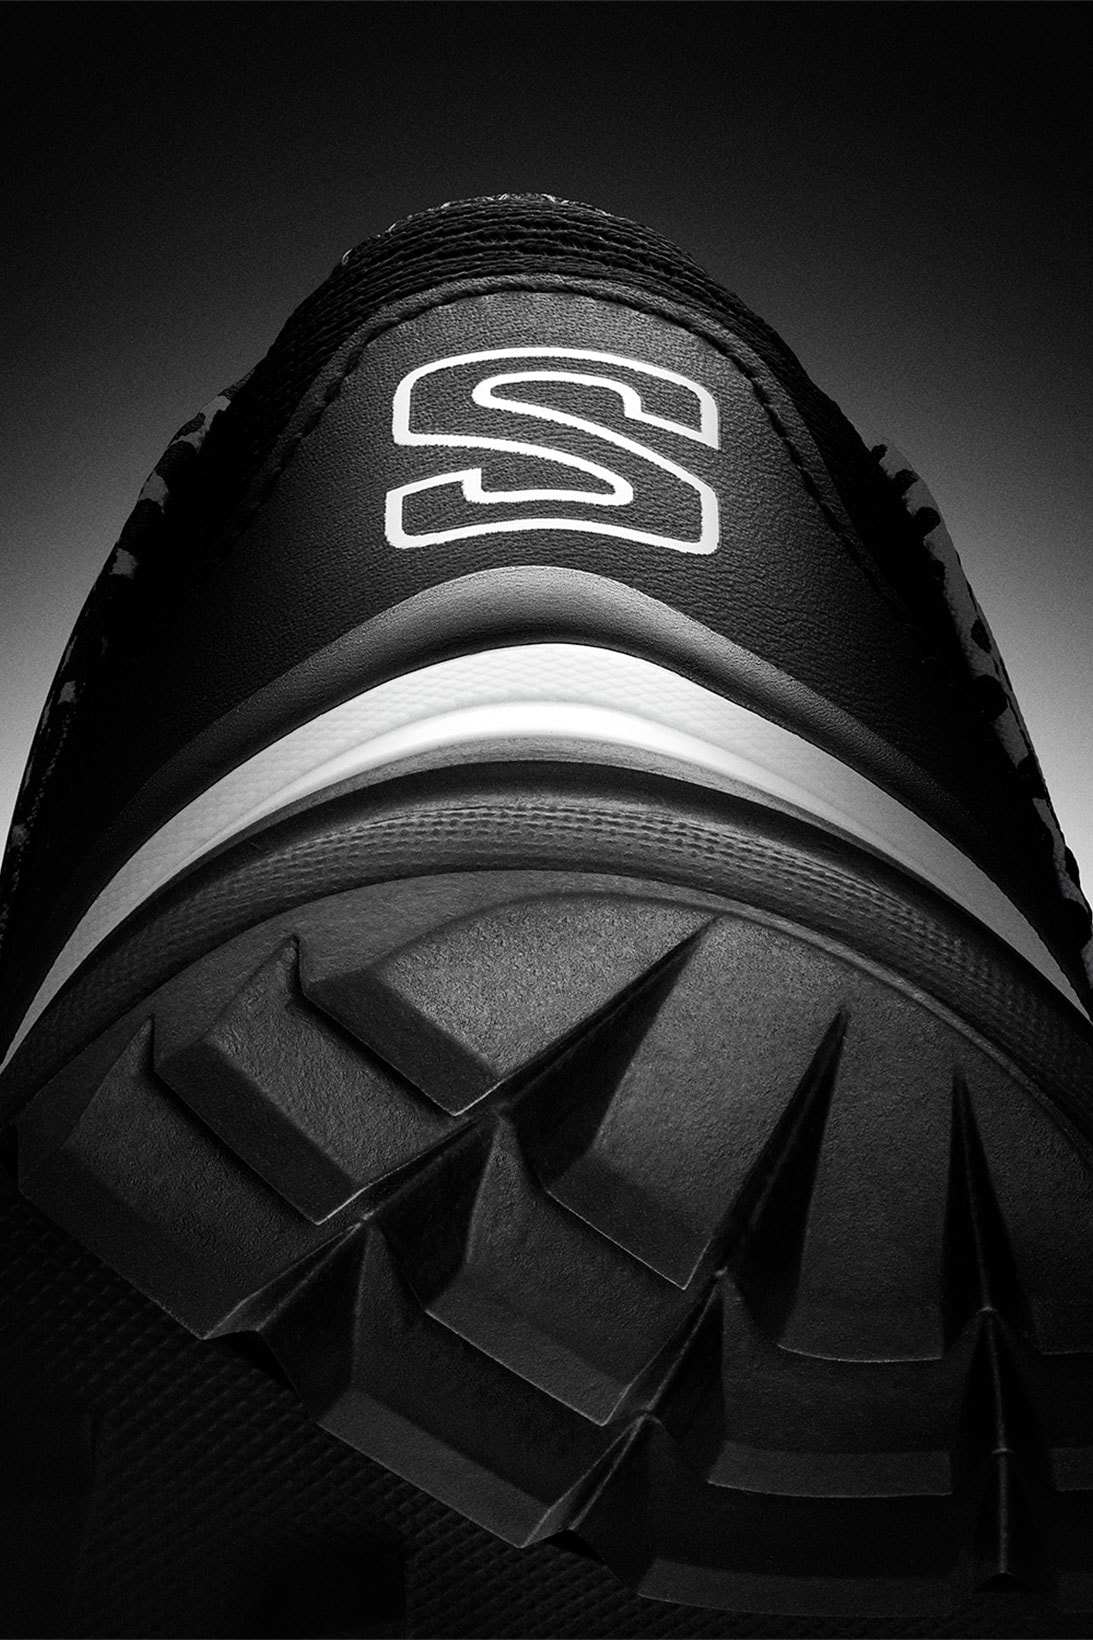 COMME des GARÇONS Salomon Sportstyle SR90 SR901E Collaboration Release Price Info